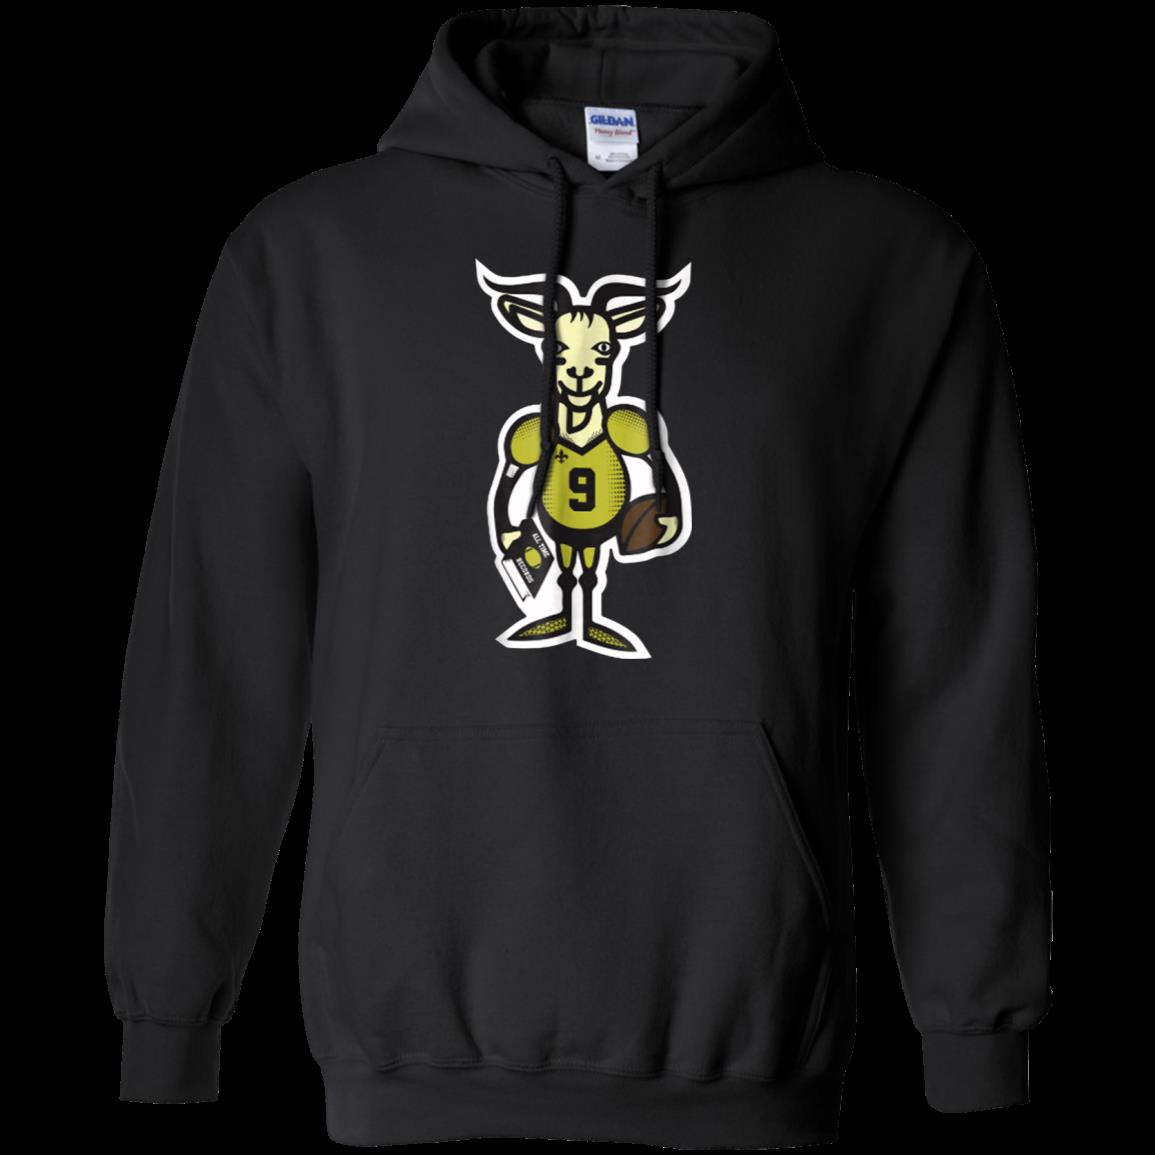 Drew Brees Goat Shirt Hoodie funny shirts, gift shirts, Tshirt